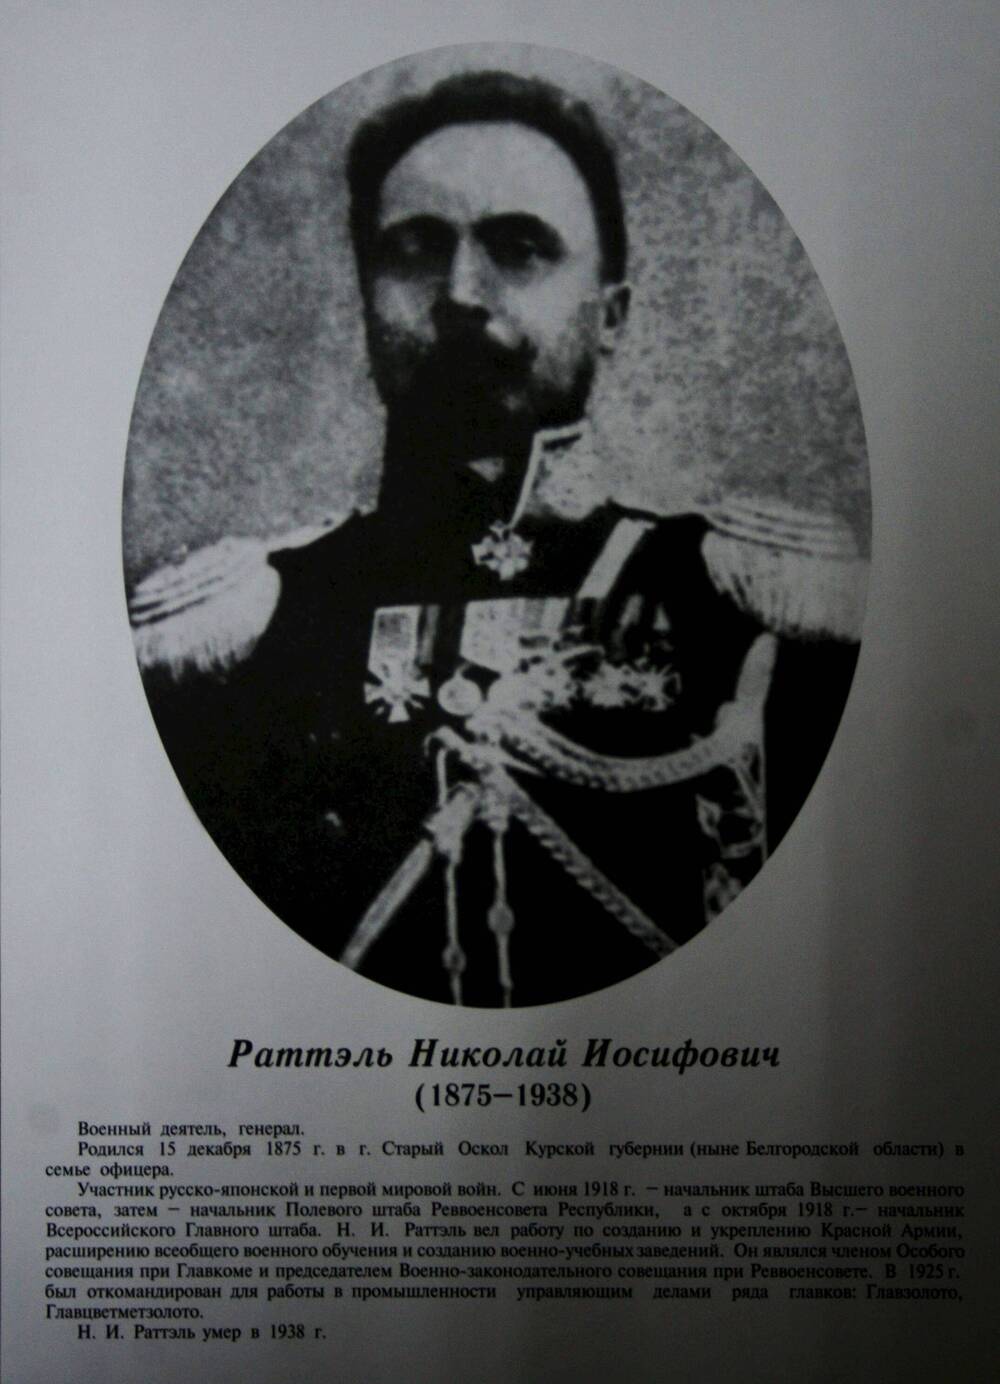 Плакат (фотопортрет) из комплекта Галерея славных имен Белгородчины. Раттэль Николай Иосифович (1875-1938).